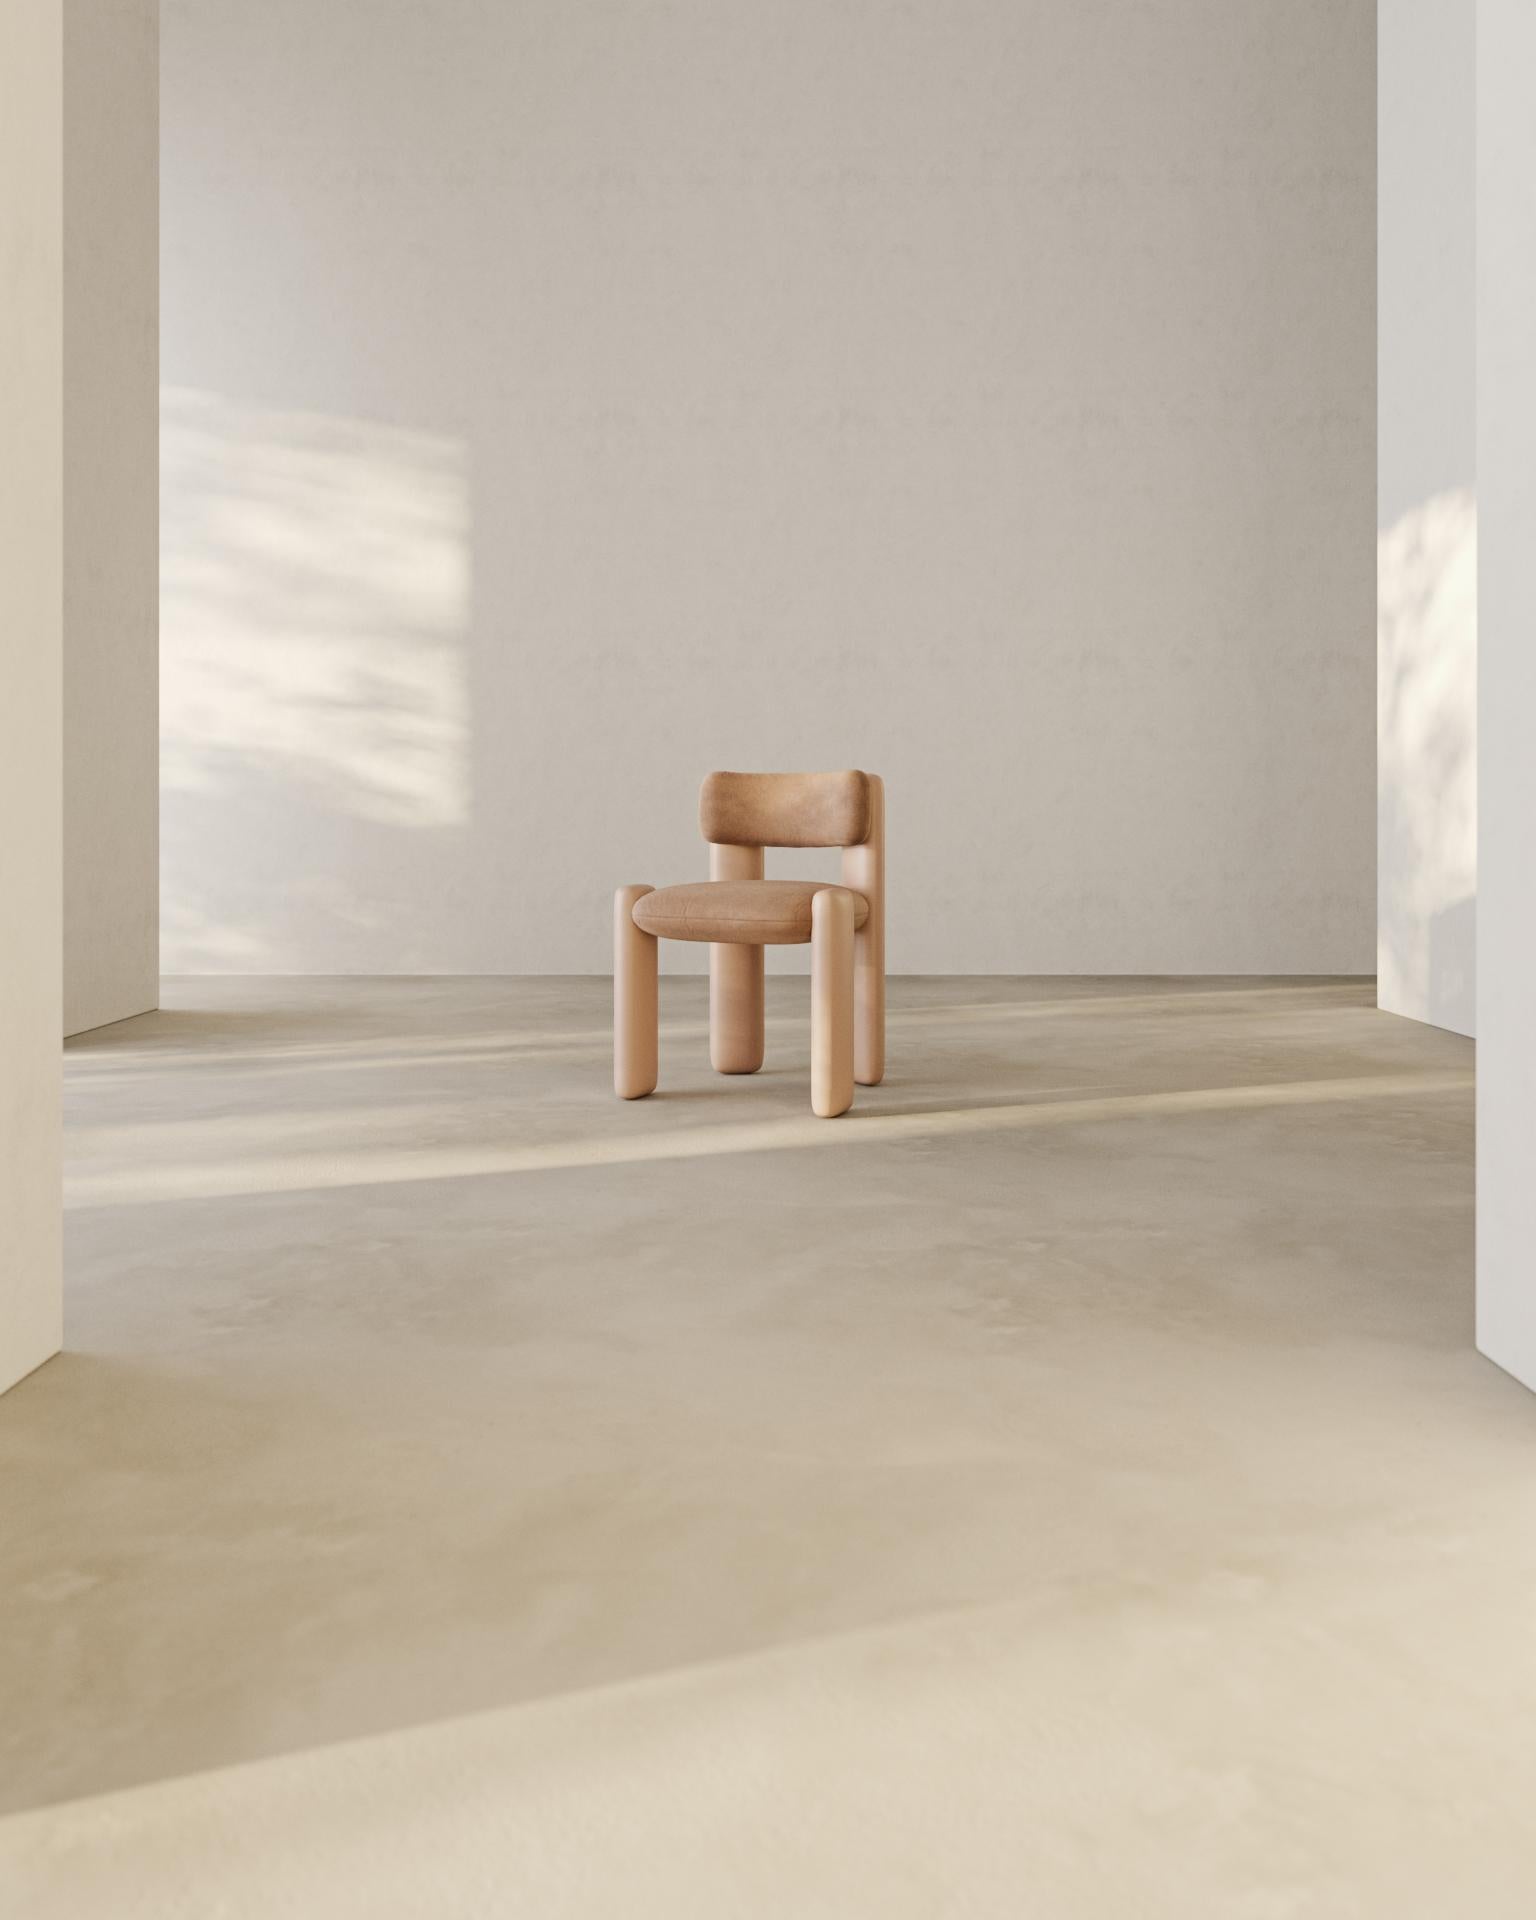 2 Stühle lola in blassrosa von Nelson Araujo.
Abmessungen: B 58 x T 50 x H 76 cm.
MATERIALIEN: Holz, Samt, Schaumstoff.

Nelson de Araújo, hat einen Abschluss in Produktdesign. Seine Leidenschaft für die Möbelindustrie entdeckte er während seines